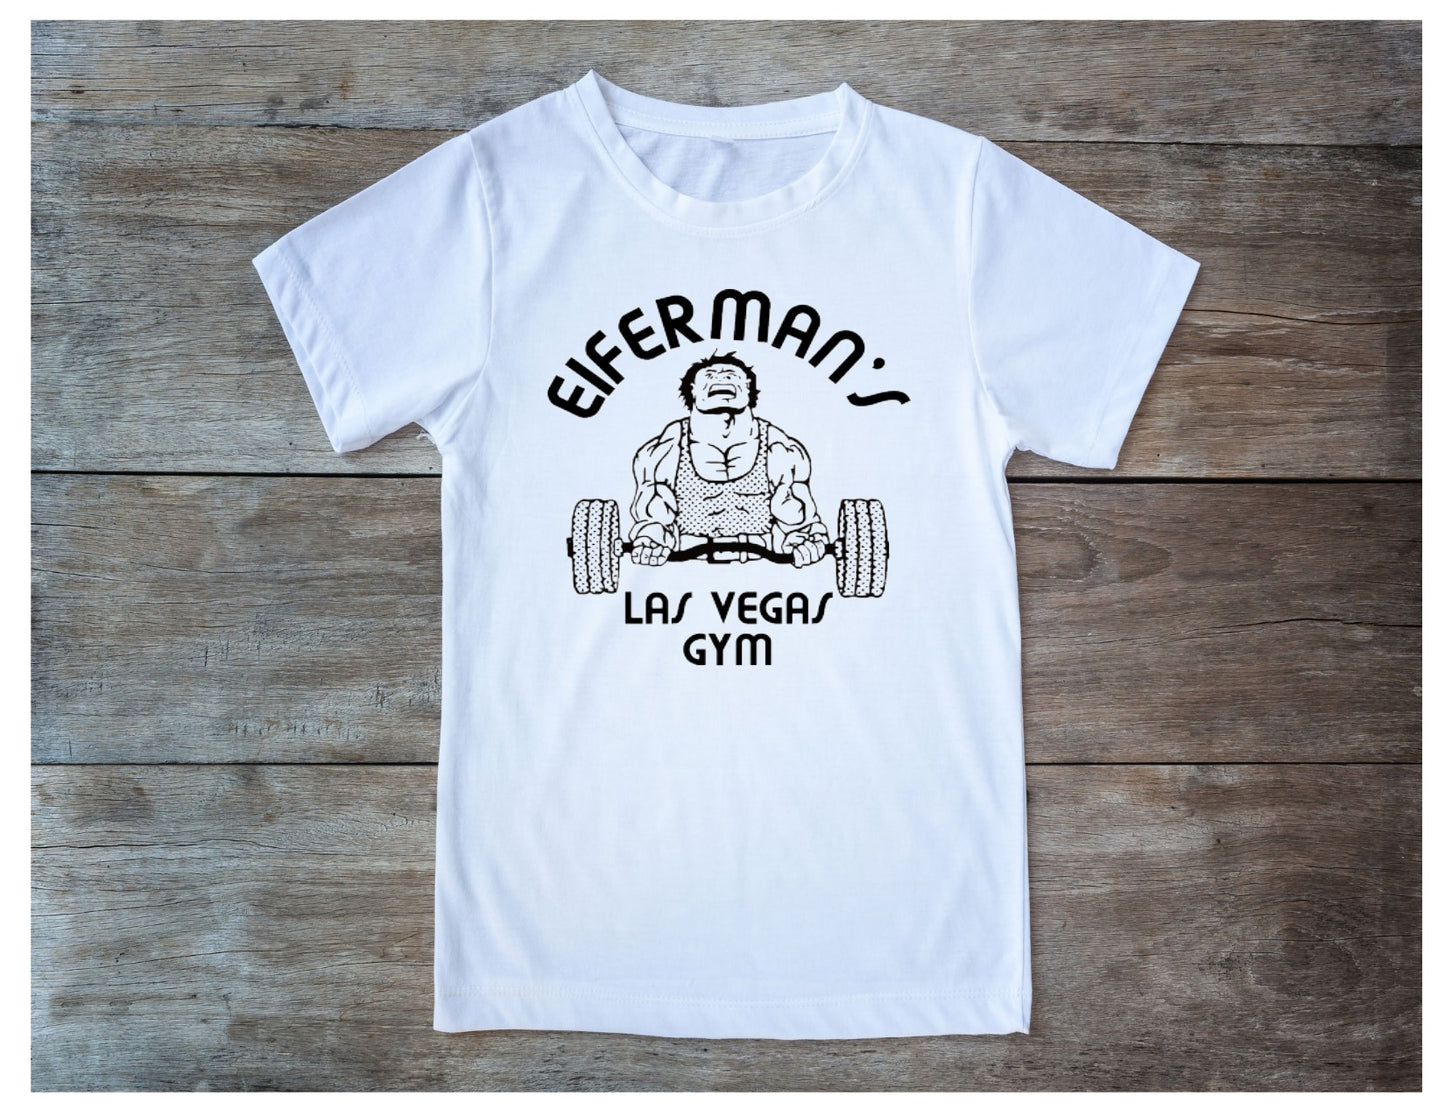 Eifermans Gym T-Shirt